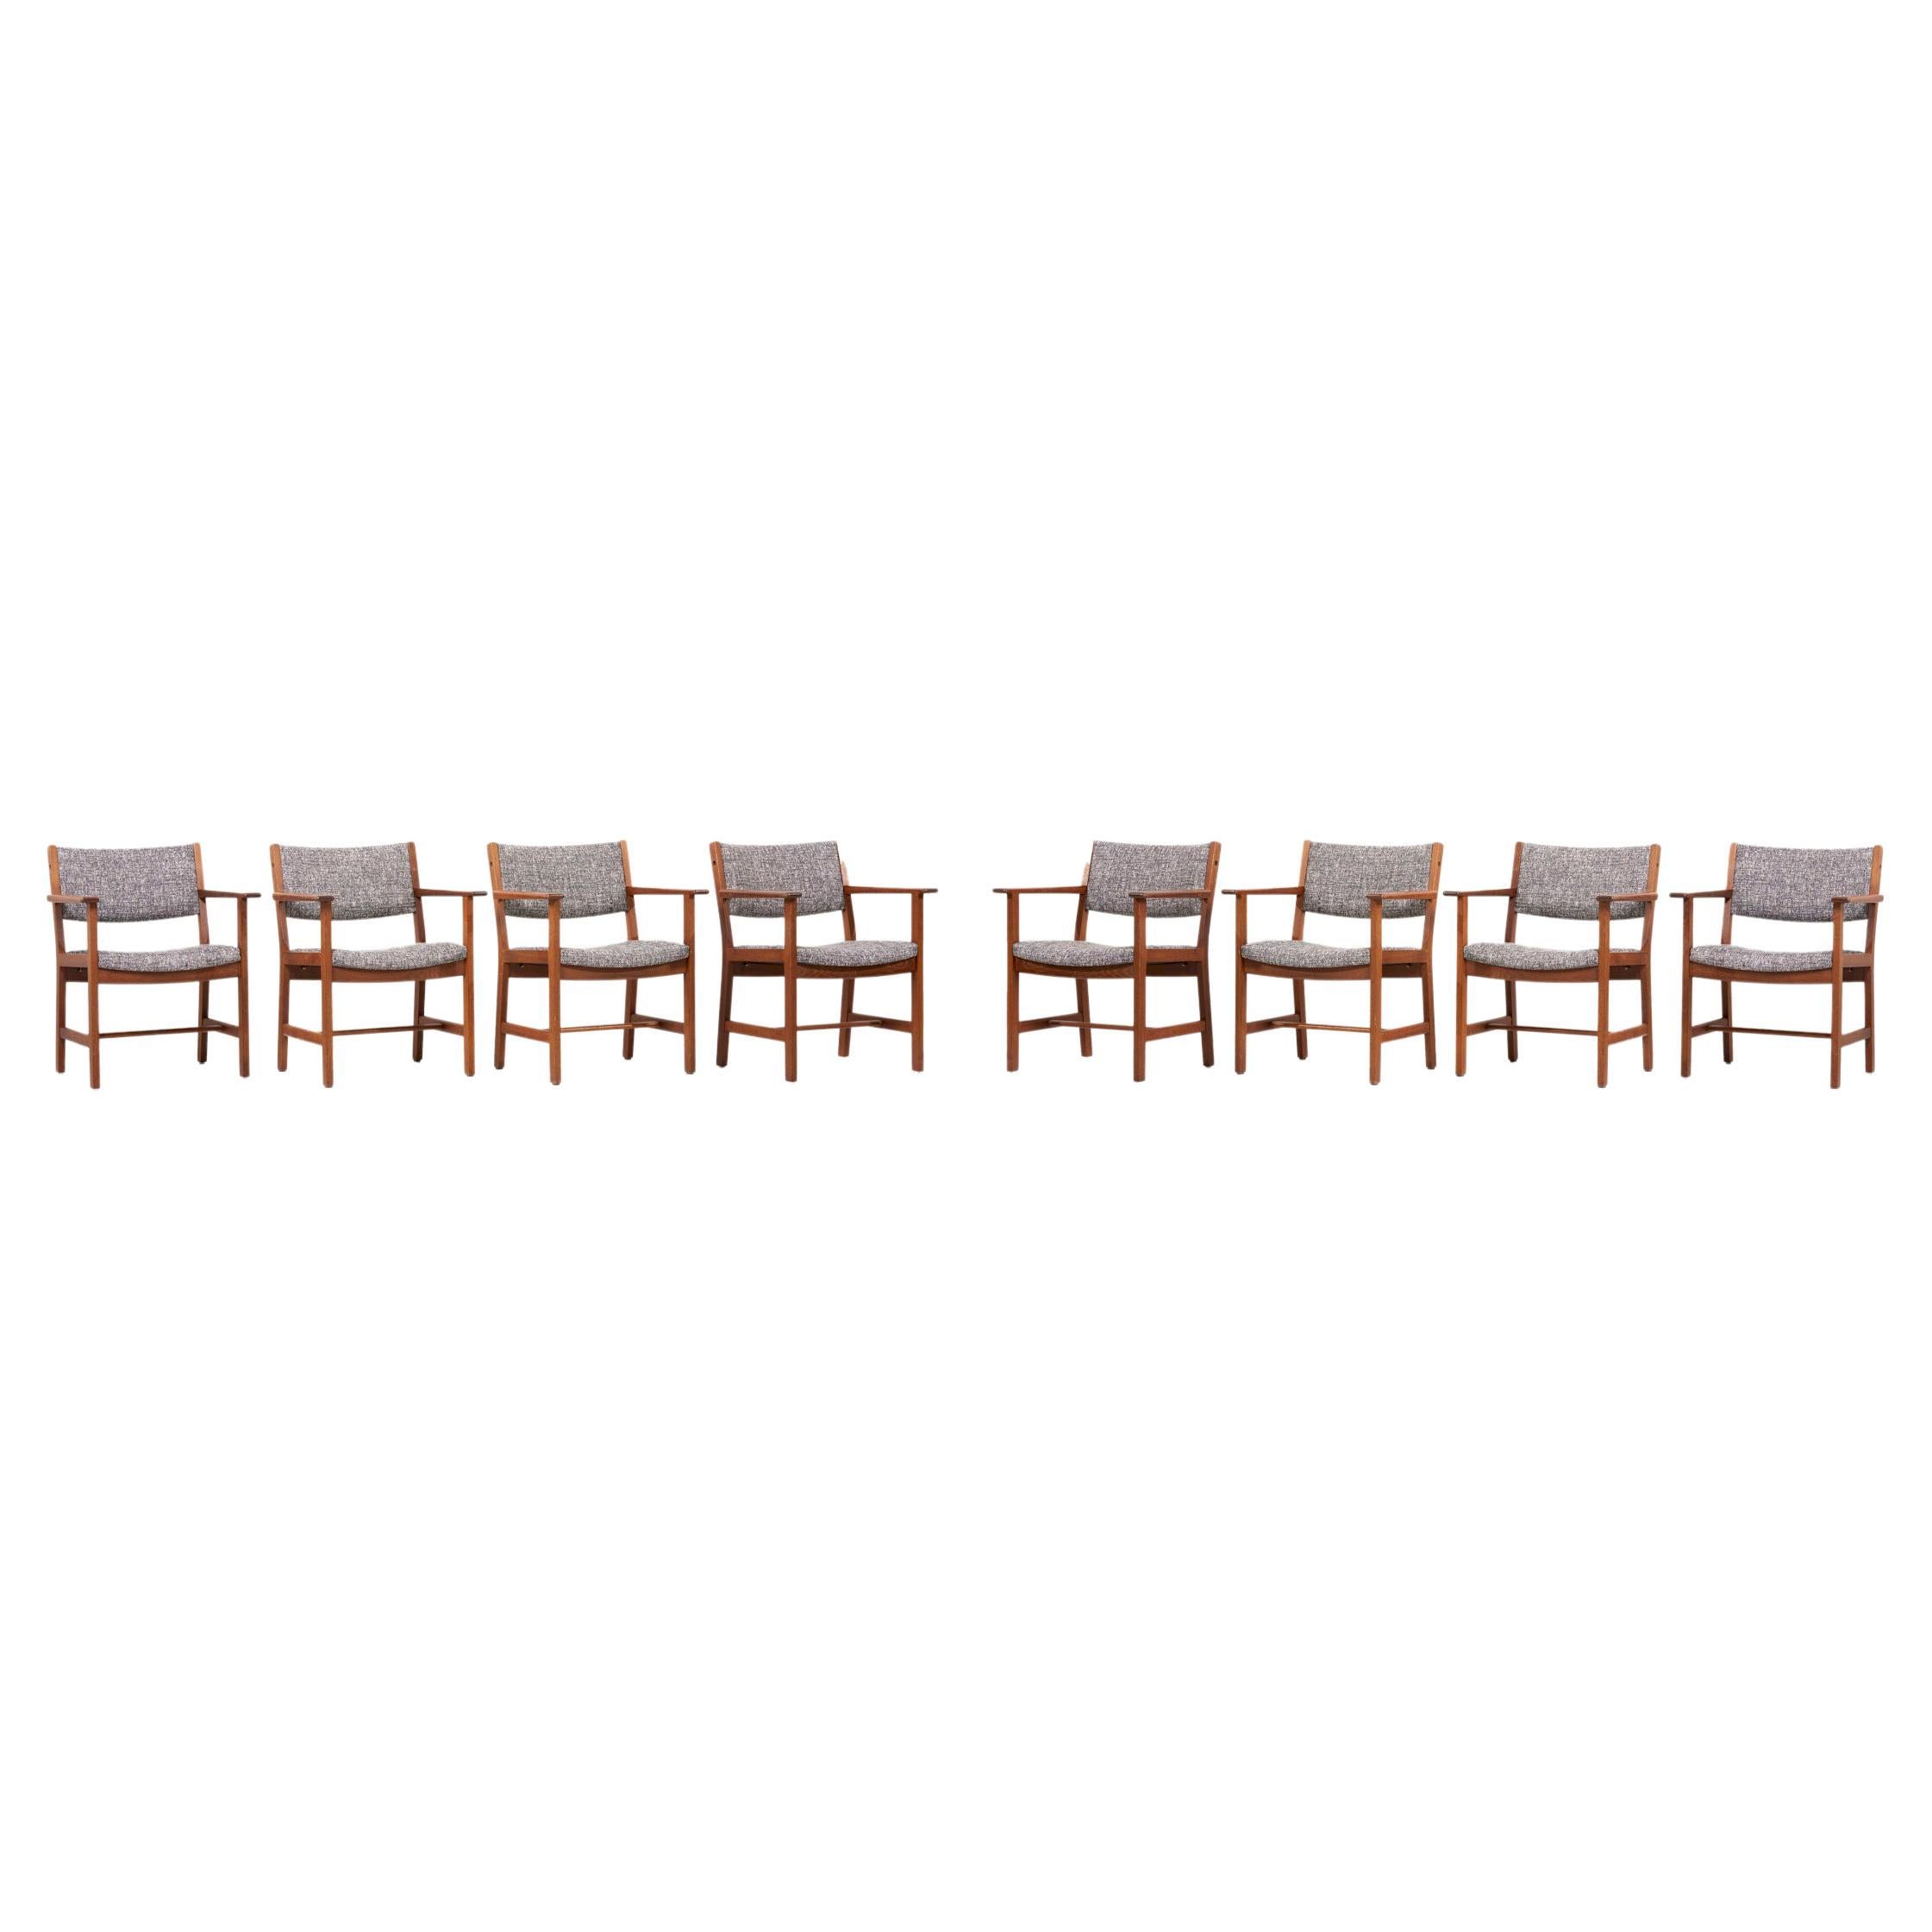 Set of 8 Hans Wegner GE Dining Chairs for GETAMA, Denmark, 1950s